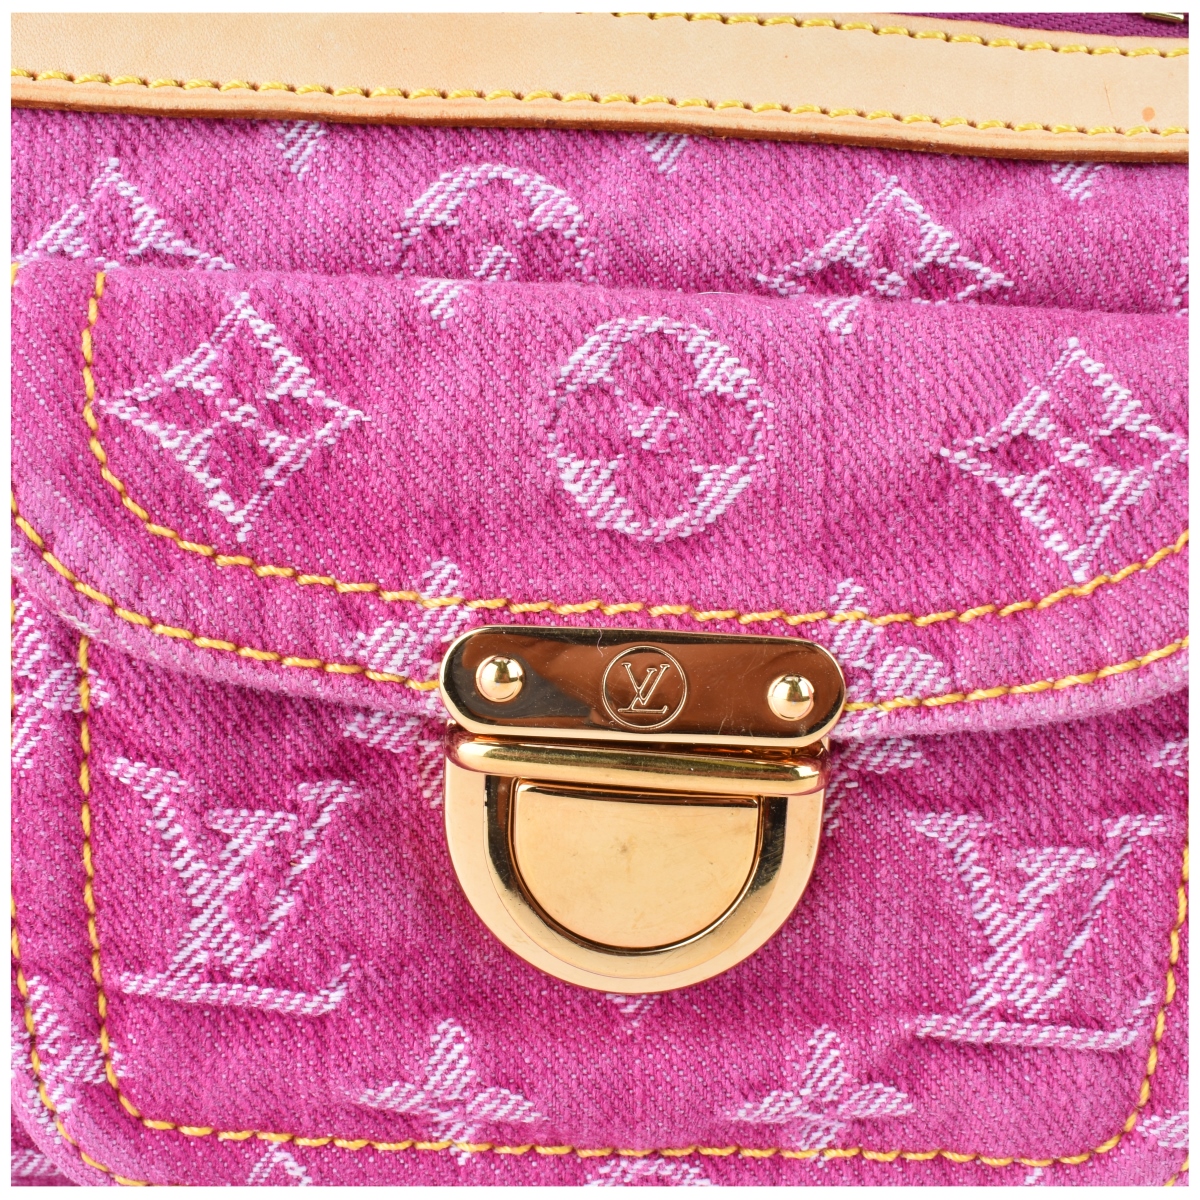 Louis Vuitton Pink Monogram Denim Neo Speedy Bag